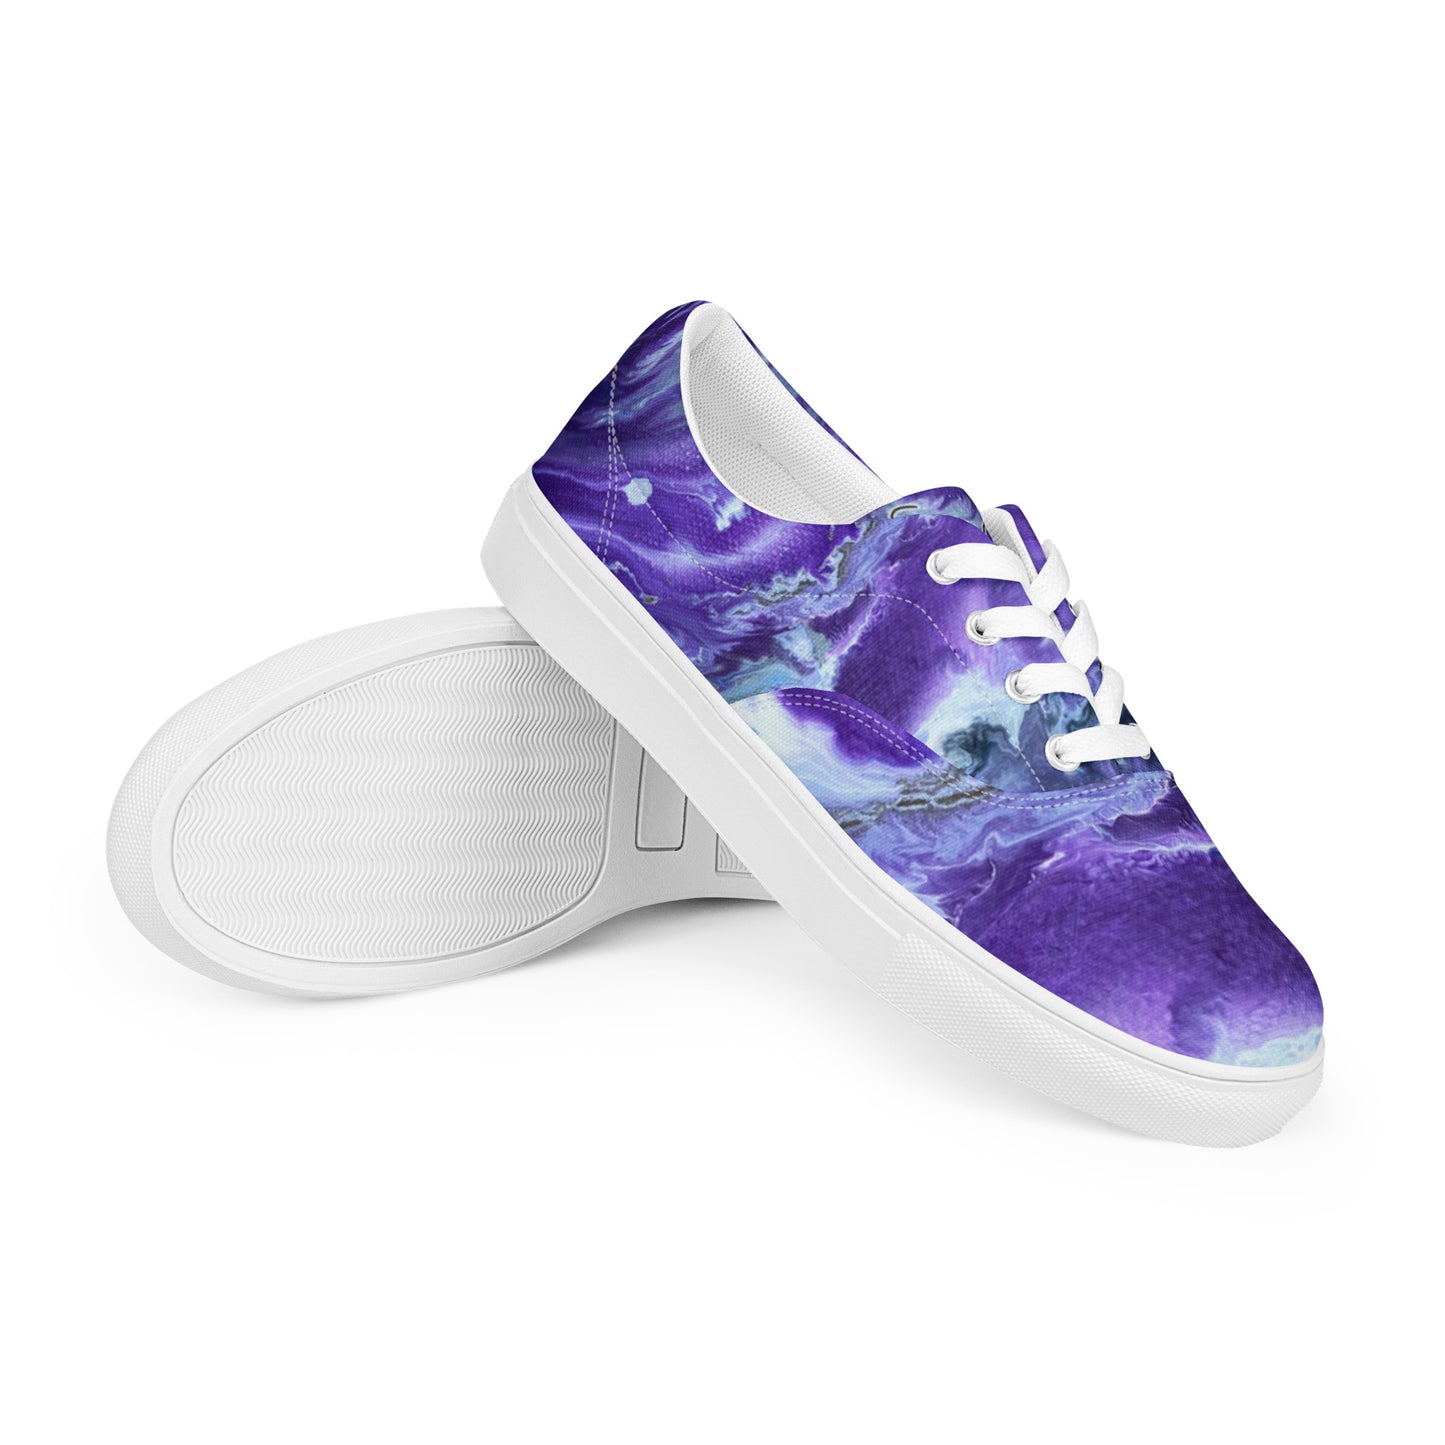 Men’s lace-up canvas shoes - Ady's Purplez!